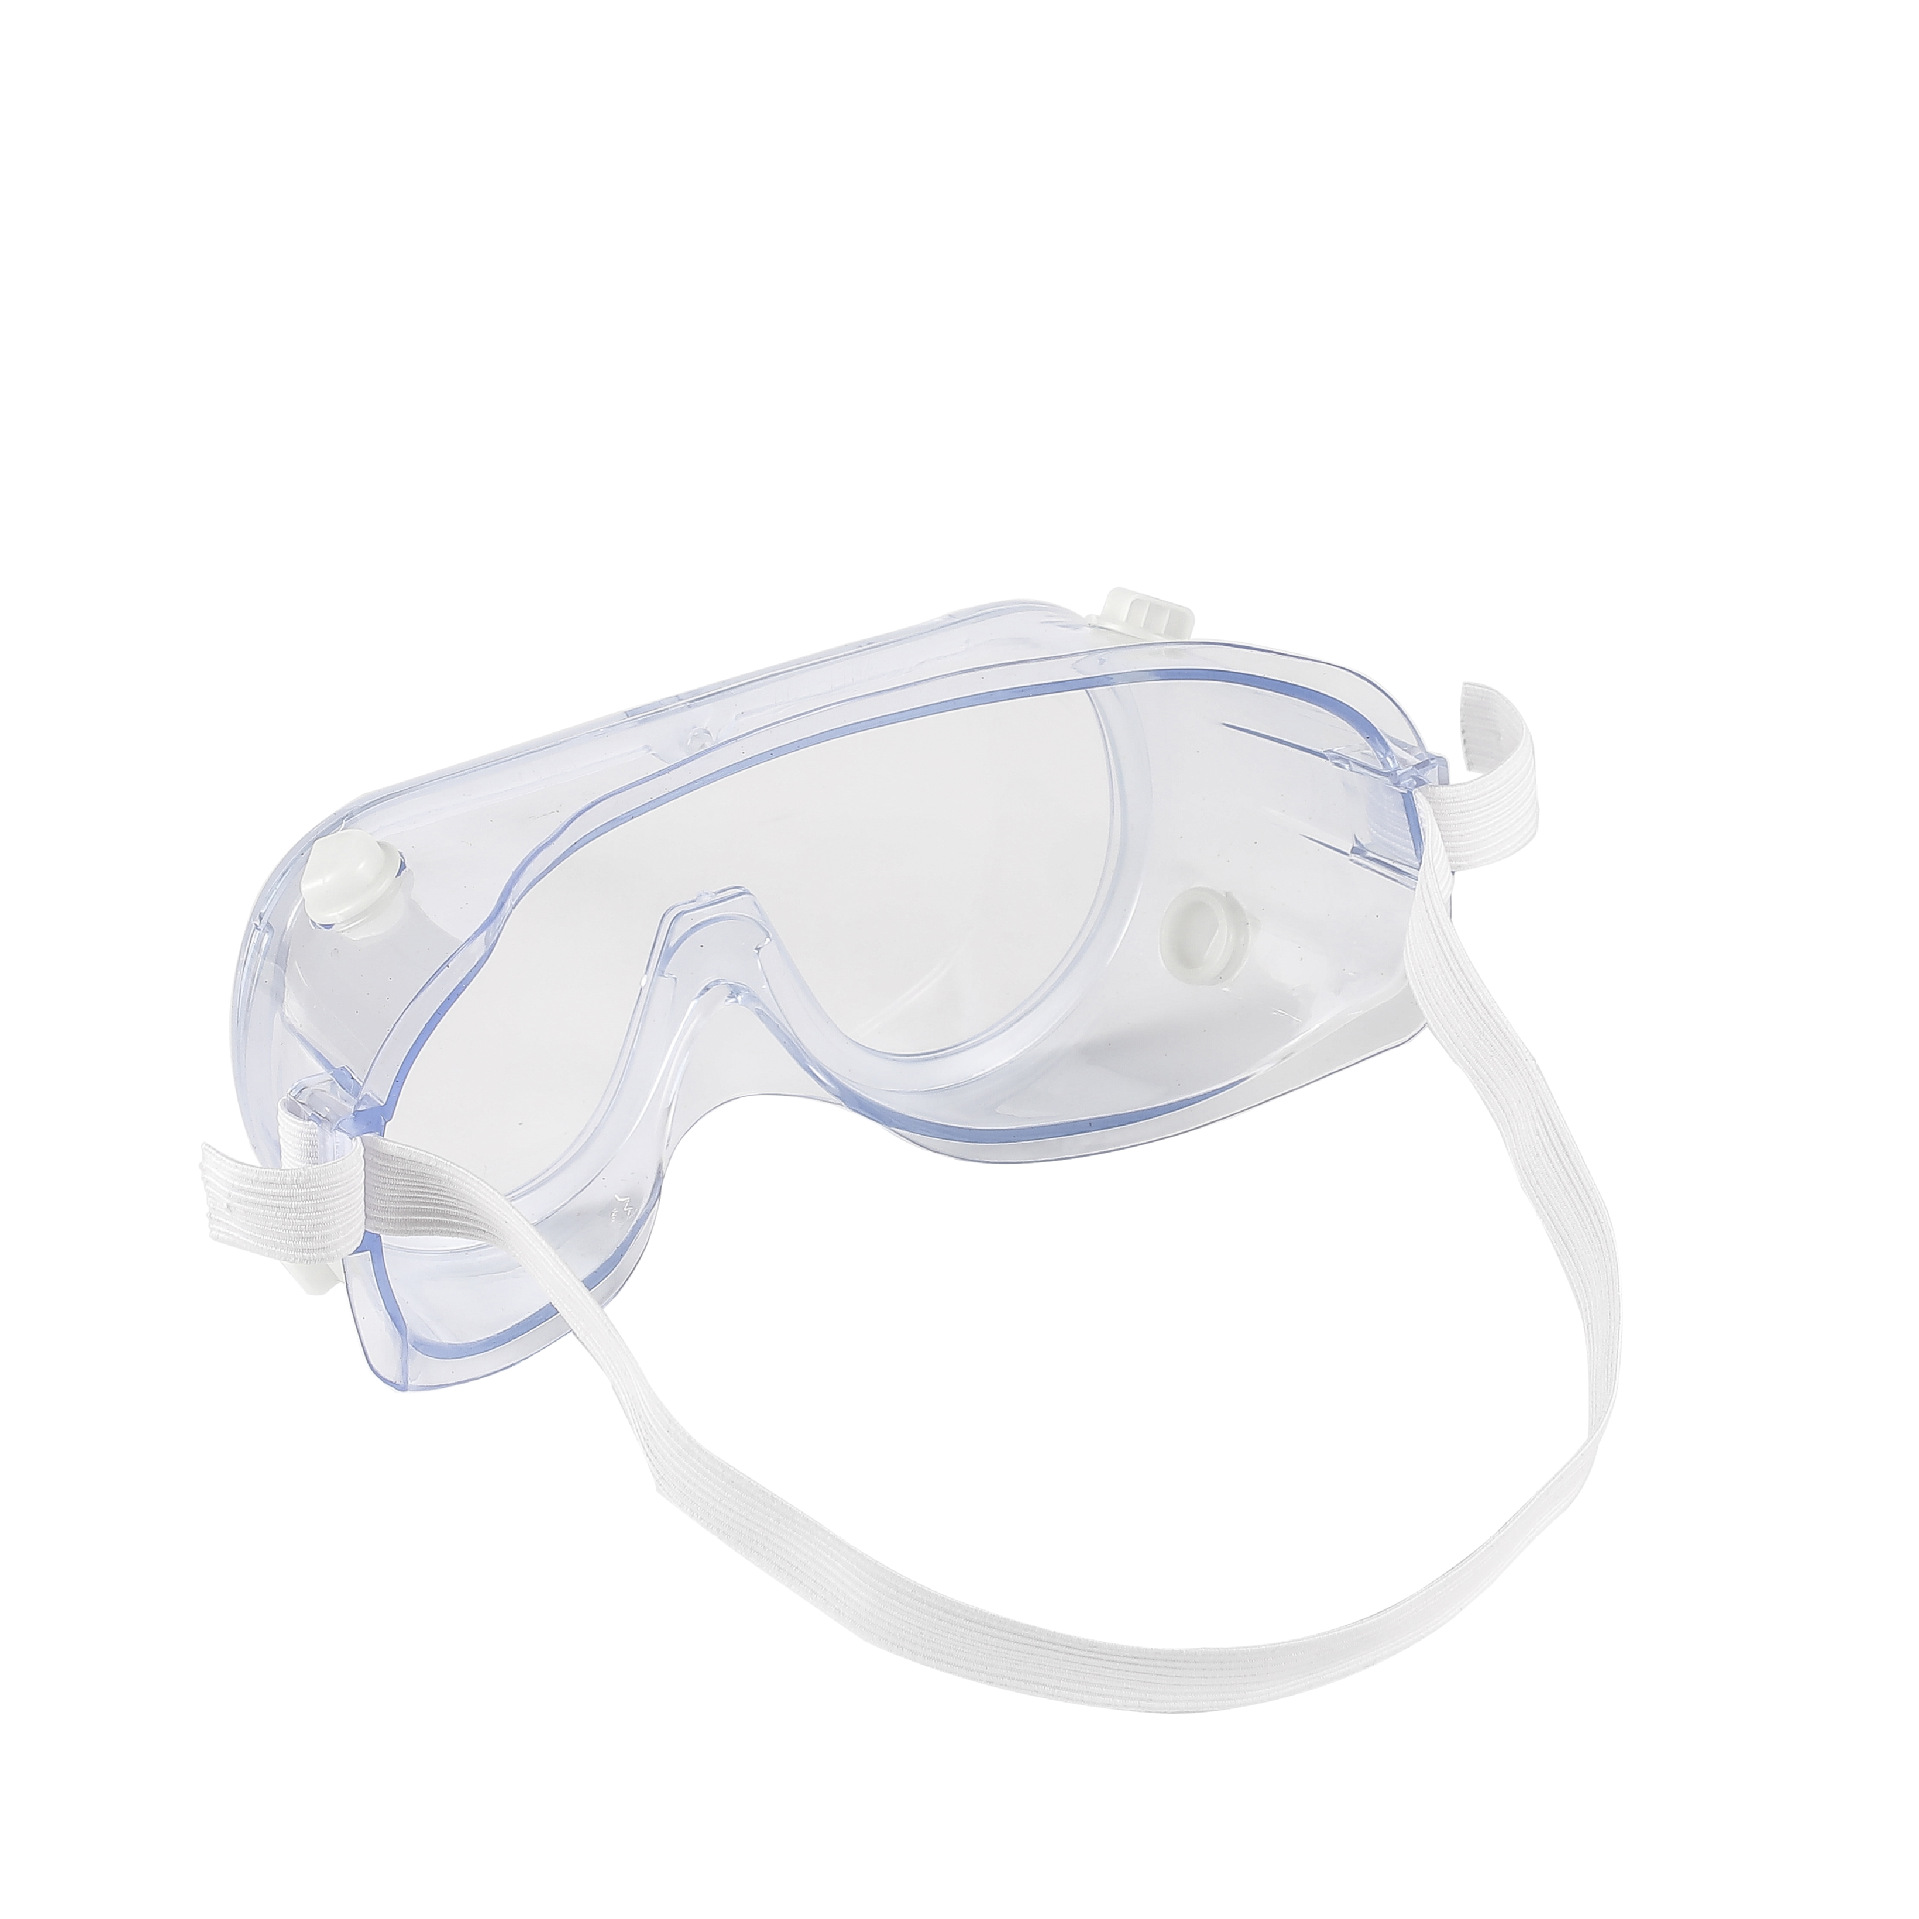 ใหม่ป้องกันหมอก pc เลนส์ความปลอดภัยแว่นตาแว่นตาป้องกันการกระแทกป้องกันสาดทำงานขี่แว่นตา windproof ป้องกันรังสียูวีป้องกันแว่นตา